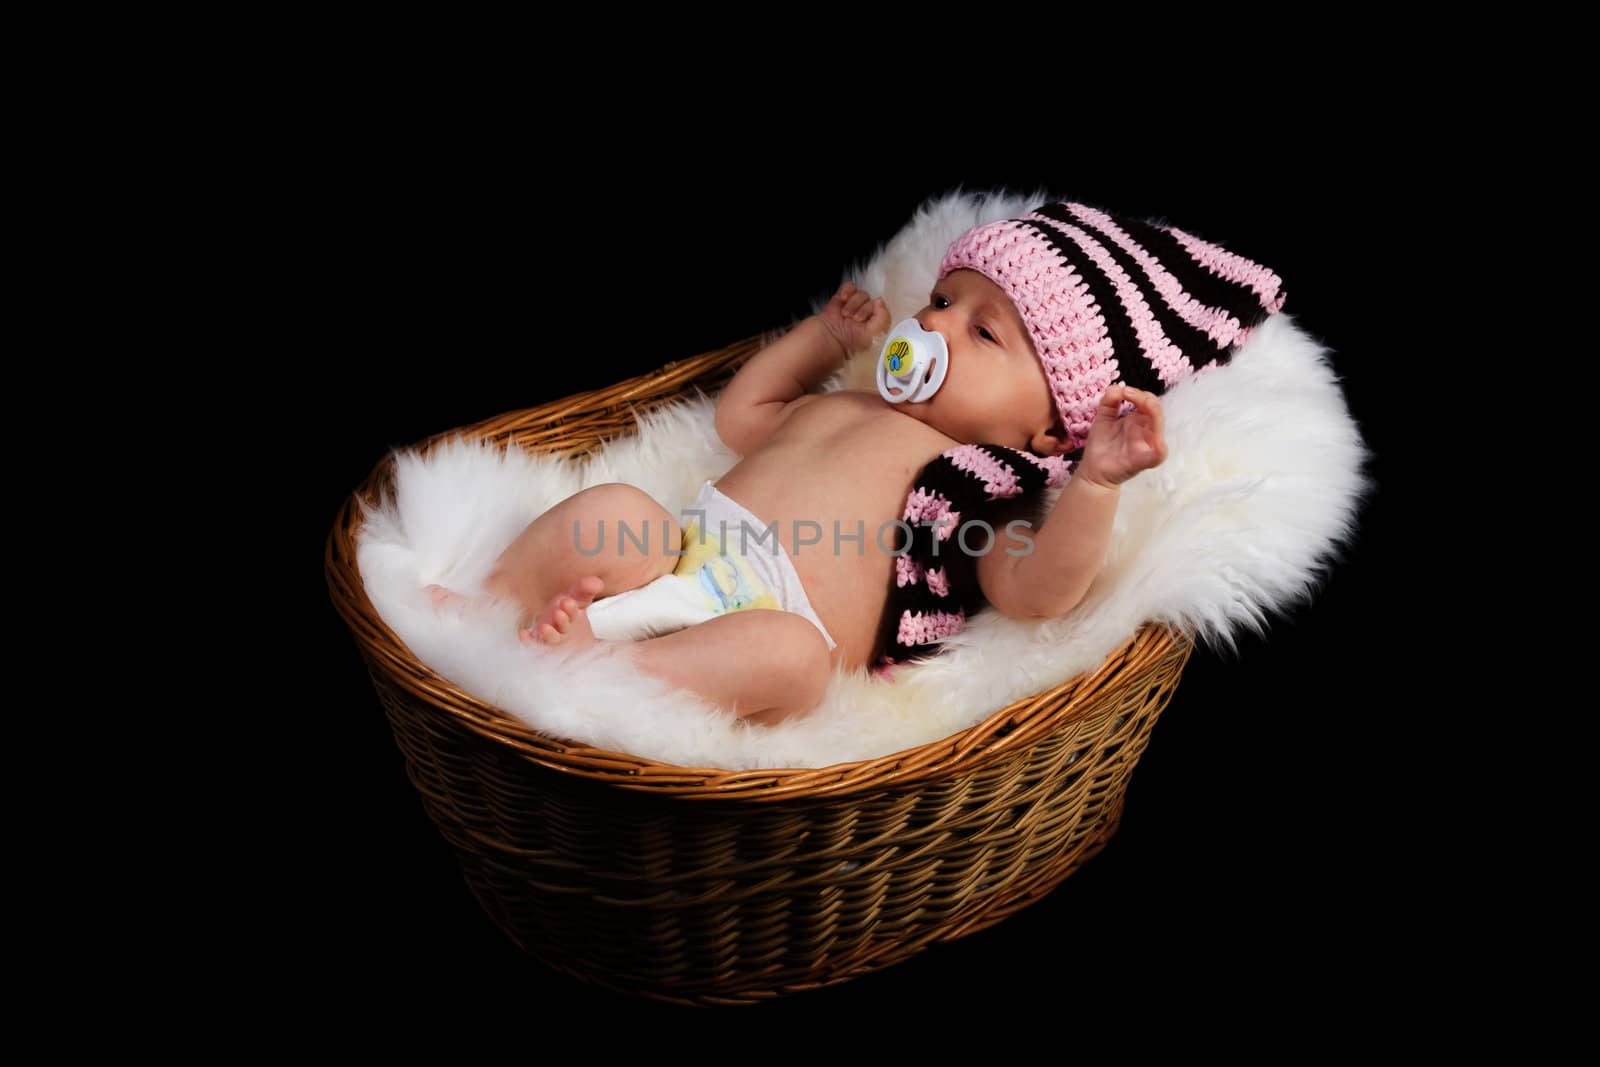 Newborn Child in a wicker basket on a black background.